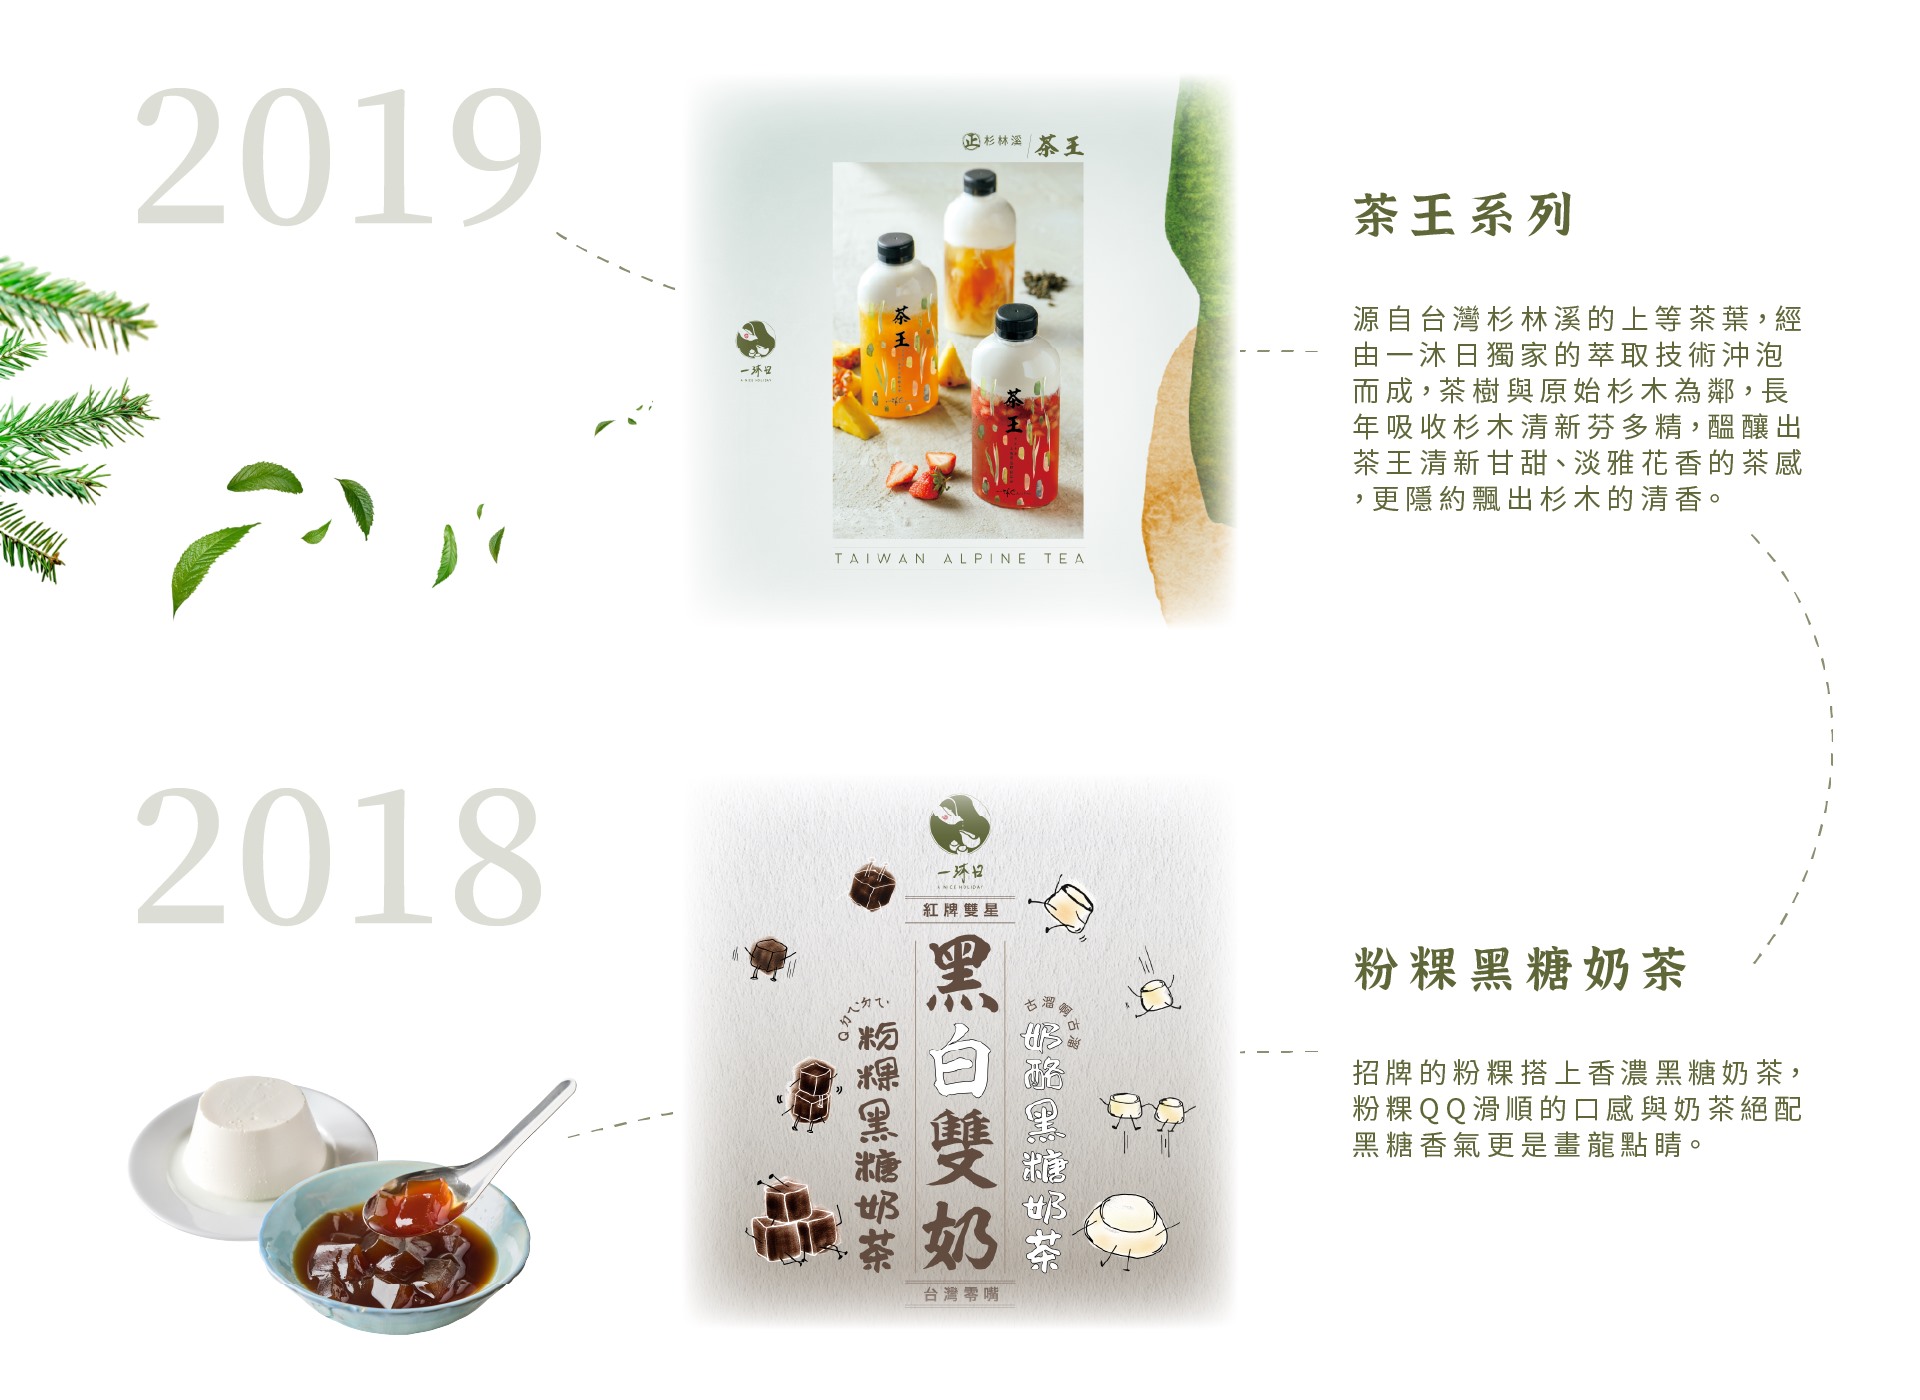 一沐日 2019-2018年度飲品推薦-茶王系列、粉粿黑糖奶茶